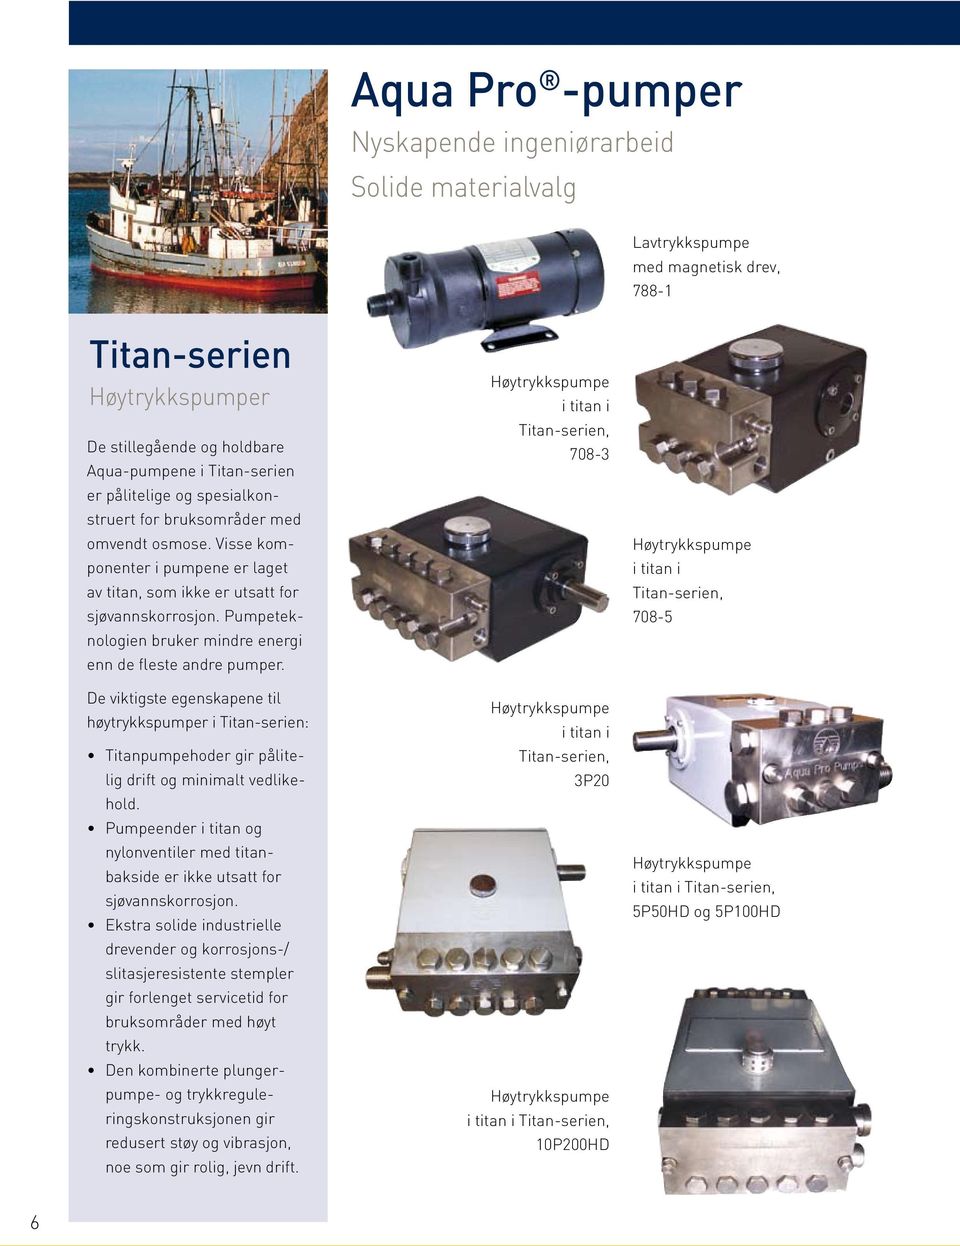 Pumpeteknologien bruker mindre energi enn de fleste andre pumper. De viktigste egenskapene til høytrykkspumper i Titan-serien: Titanpumpehoder gir pålitelig drift og minimalt vedlikehold.